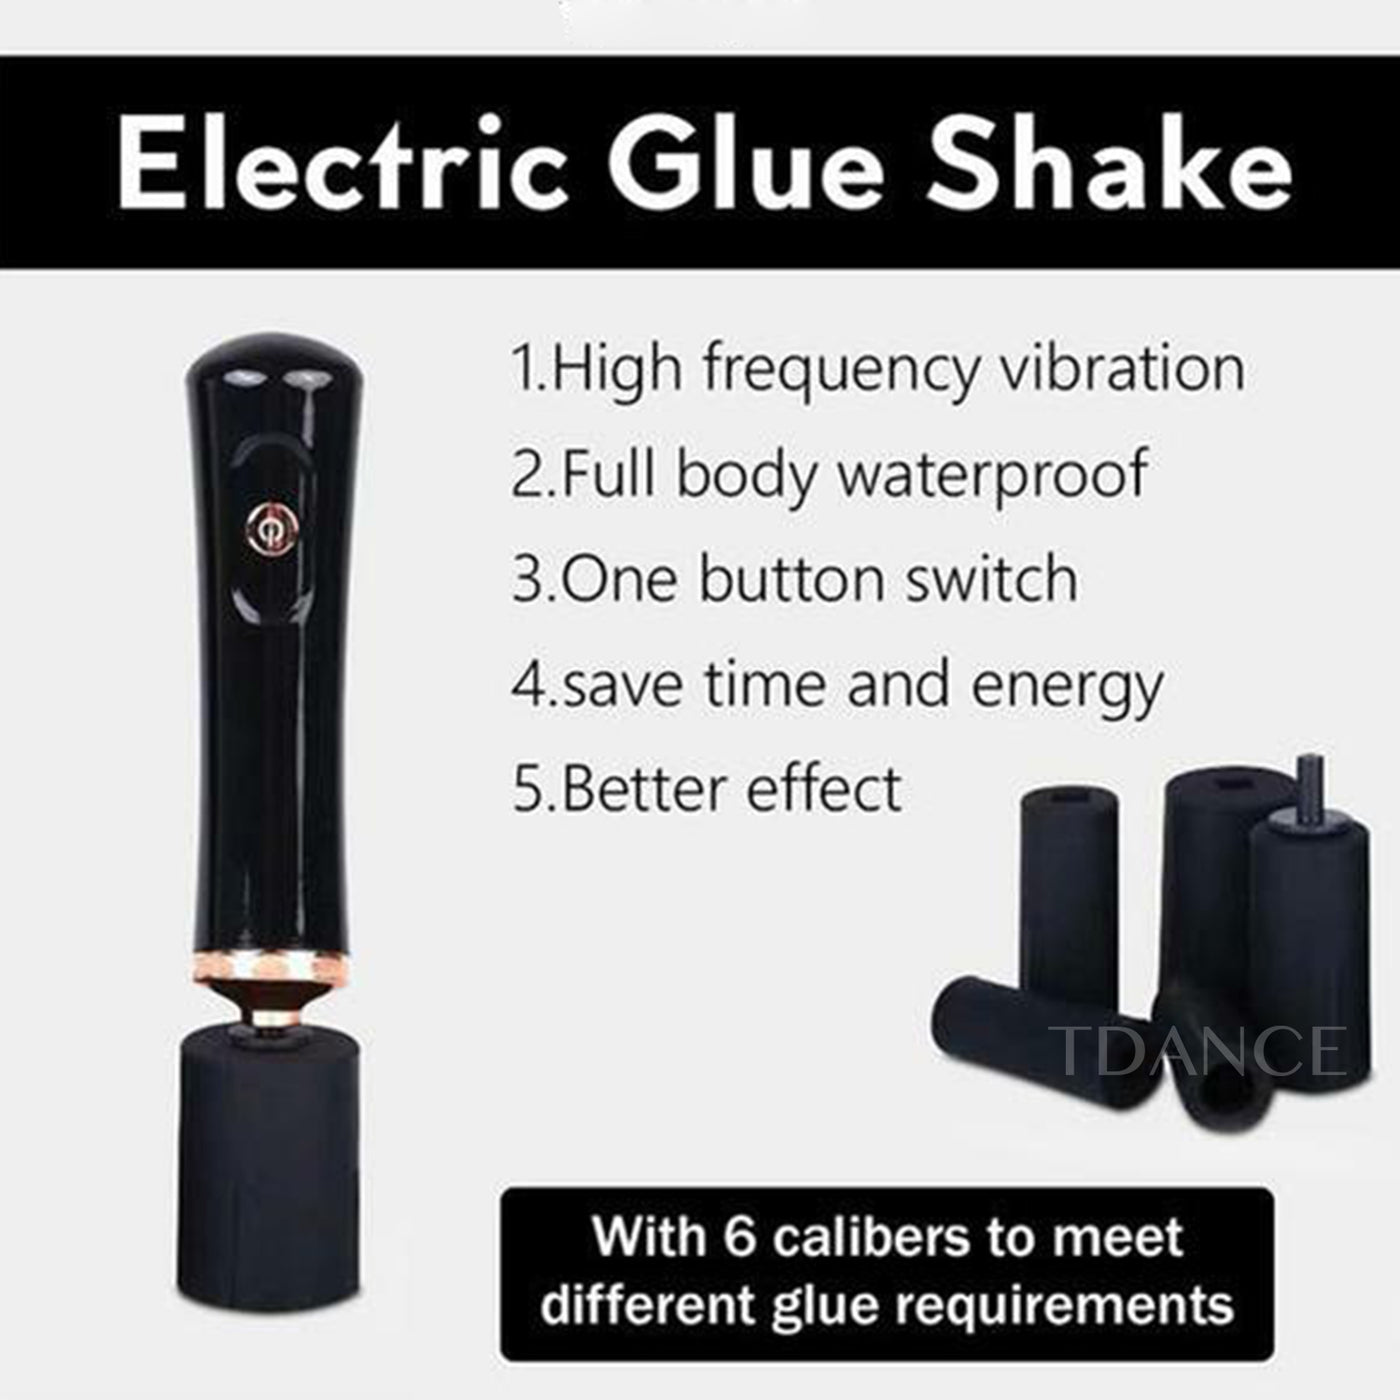 Electric Glue Shake